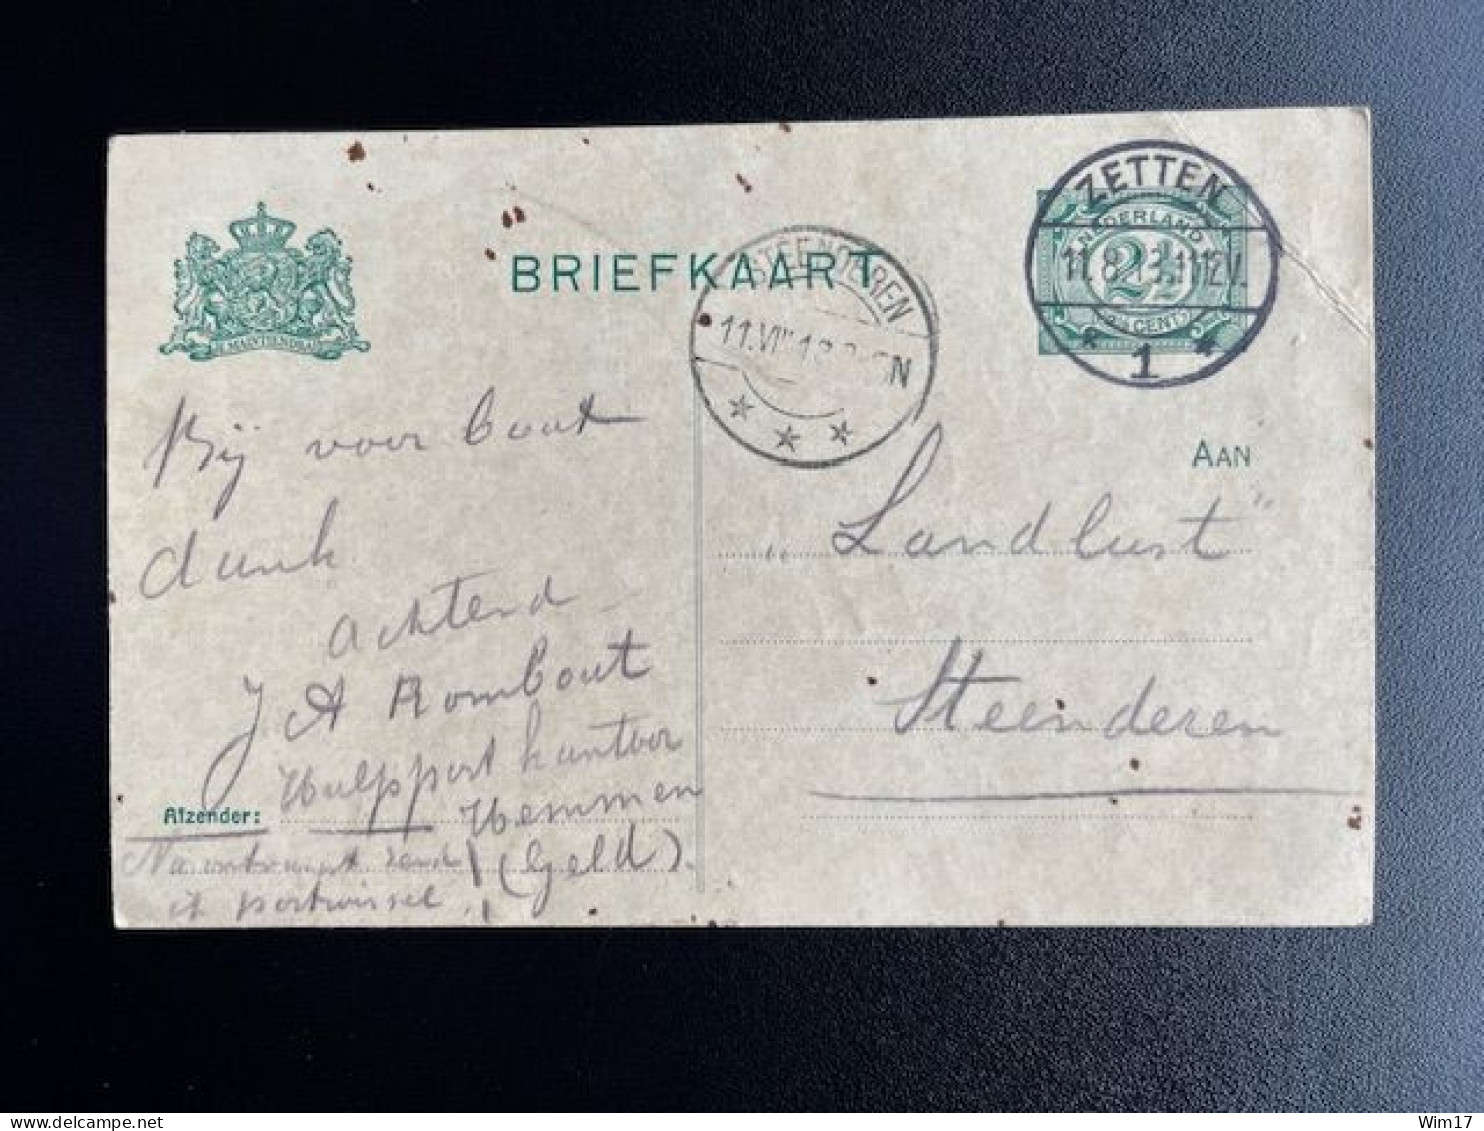 NETHERLANDS 1913 POSTCARD ZETTEN TO STEENDEREN 11-08-1913 NEDERLAND BRIEFKAART - Postal Stationery